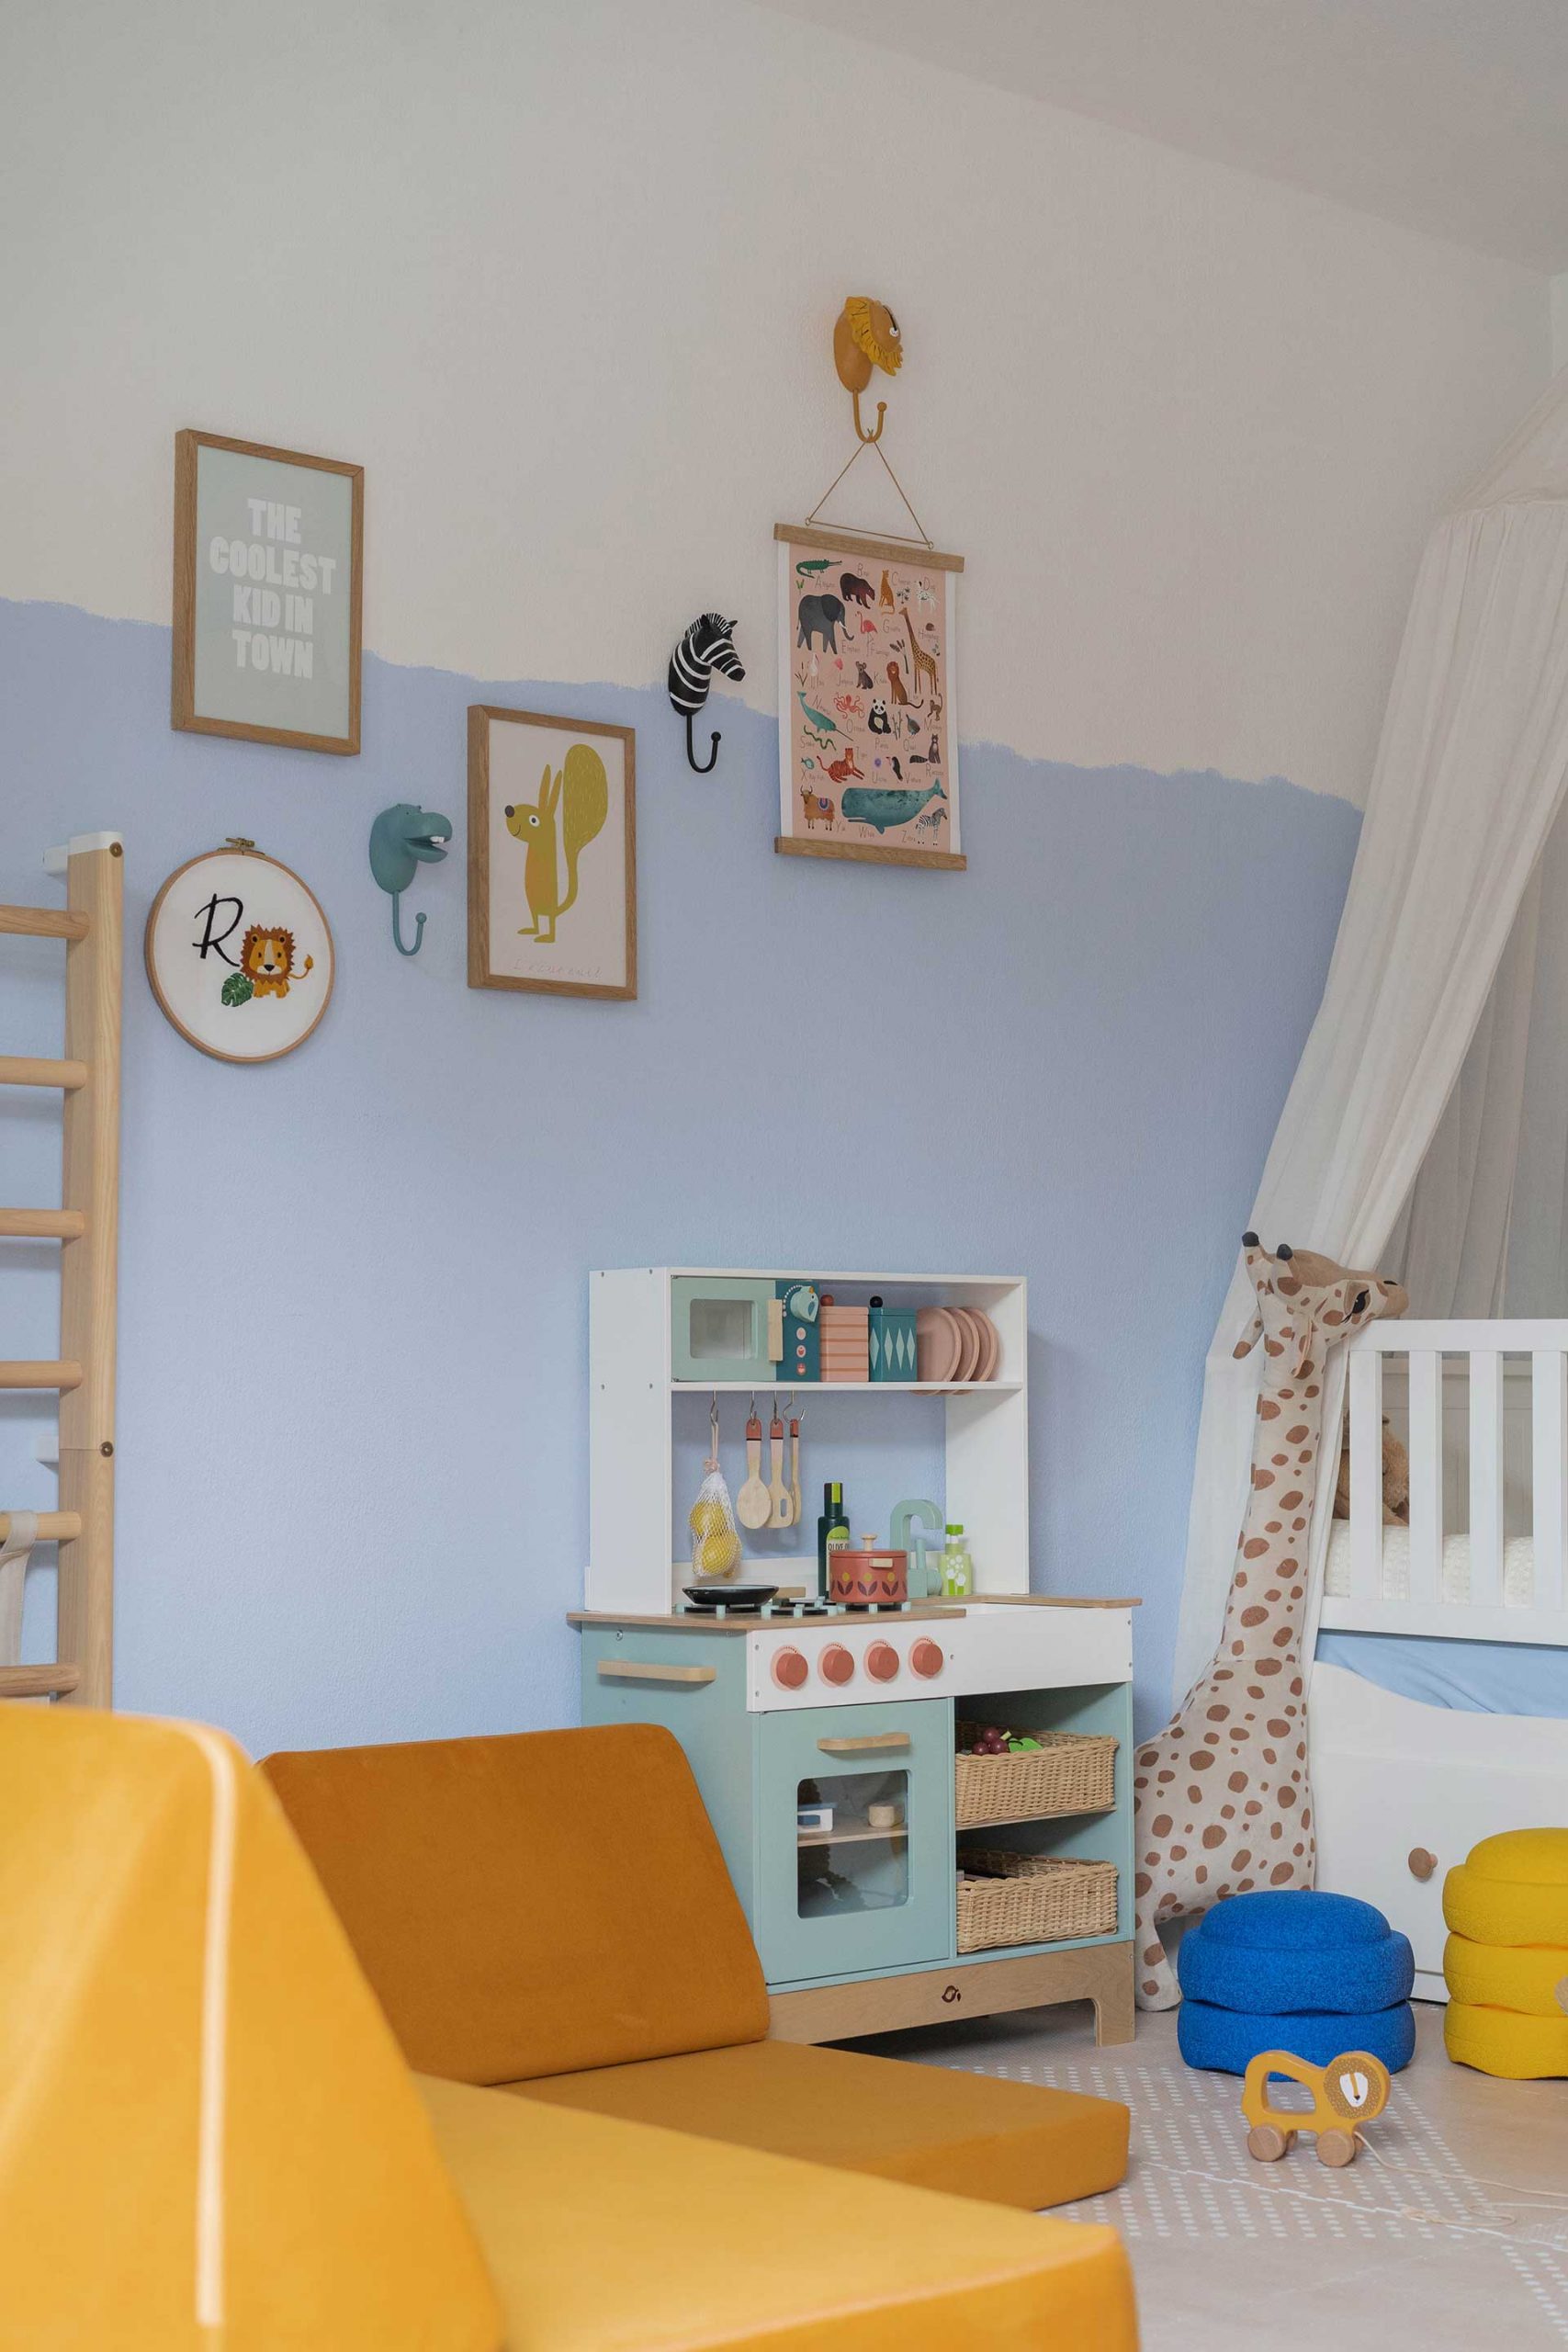 Anzeige. Ein Jungszimmer in Blau, Mintgrün und Gelb mit schöner, einfacher Wandgestaltung. Mehr dazu am Mamablog www.whoismocca.com